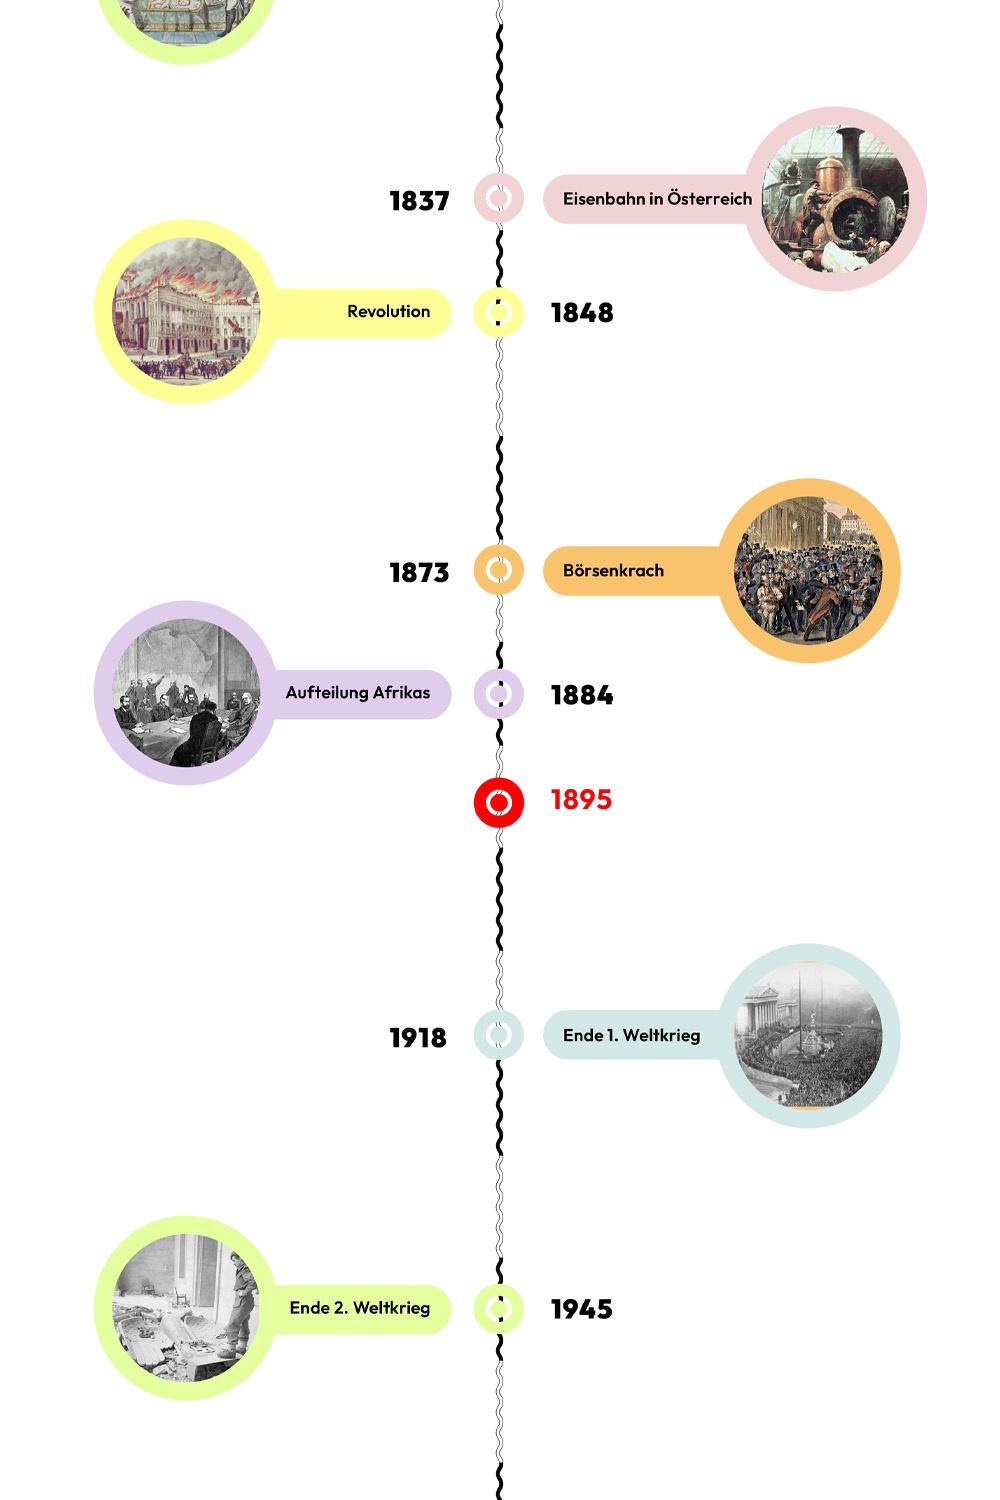 Zeitstrahl mit historischen Ereignissen - 1895 ist hervorgehoben © wasbishergeschah.at